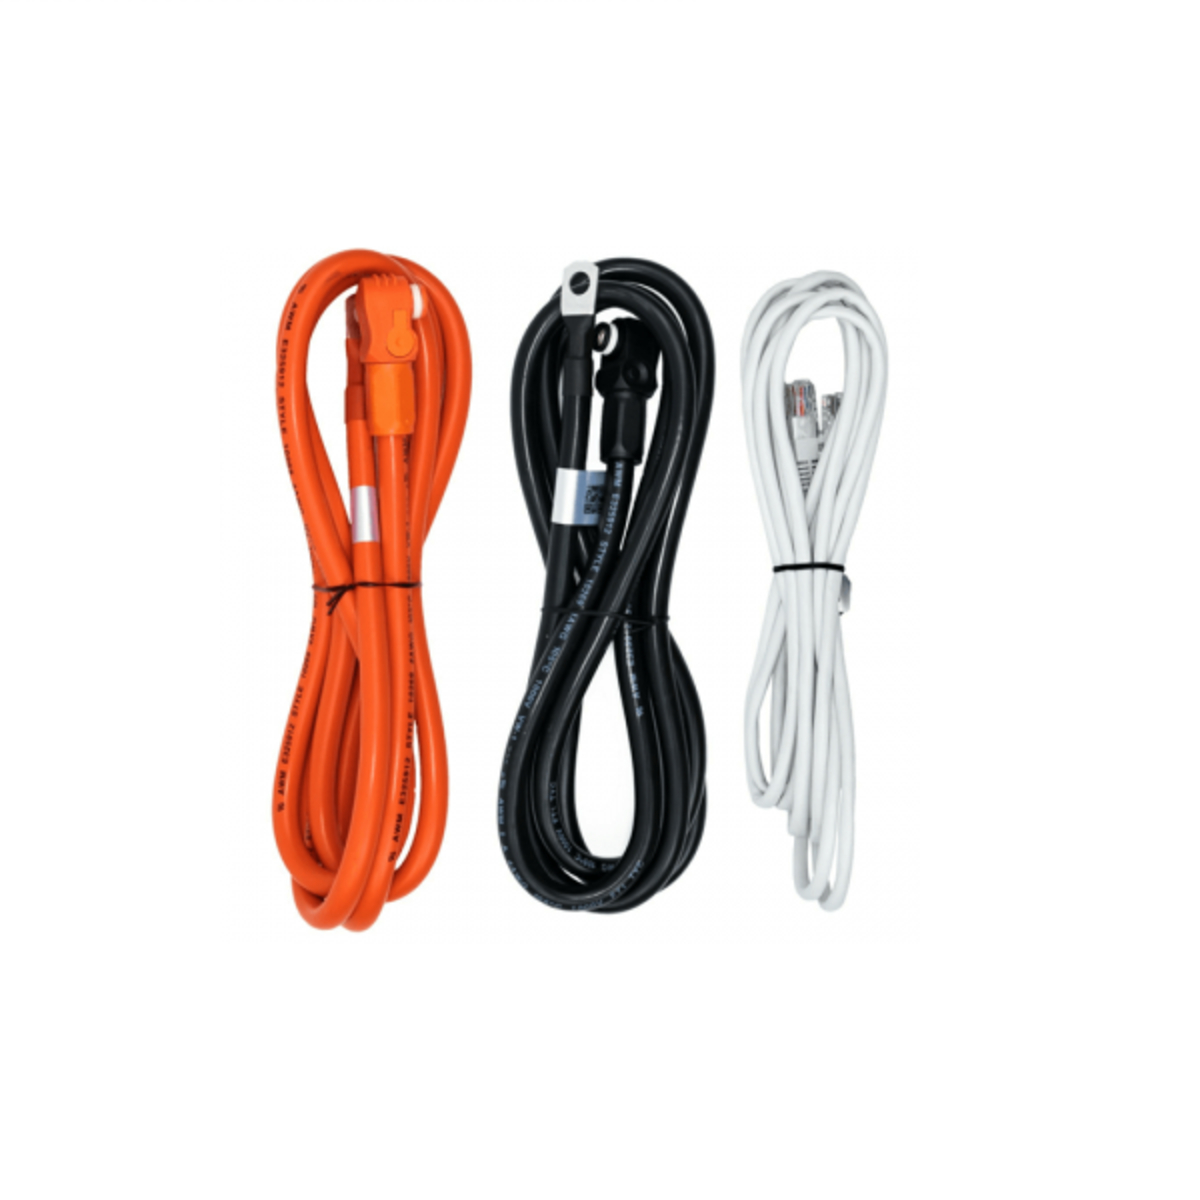 Цена комплект соединительных кабелей Pylontech 2m (LuxPower/Solis Can Ready) в Житомире